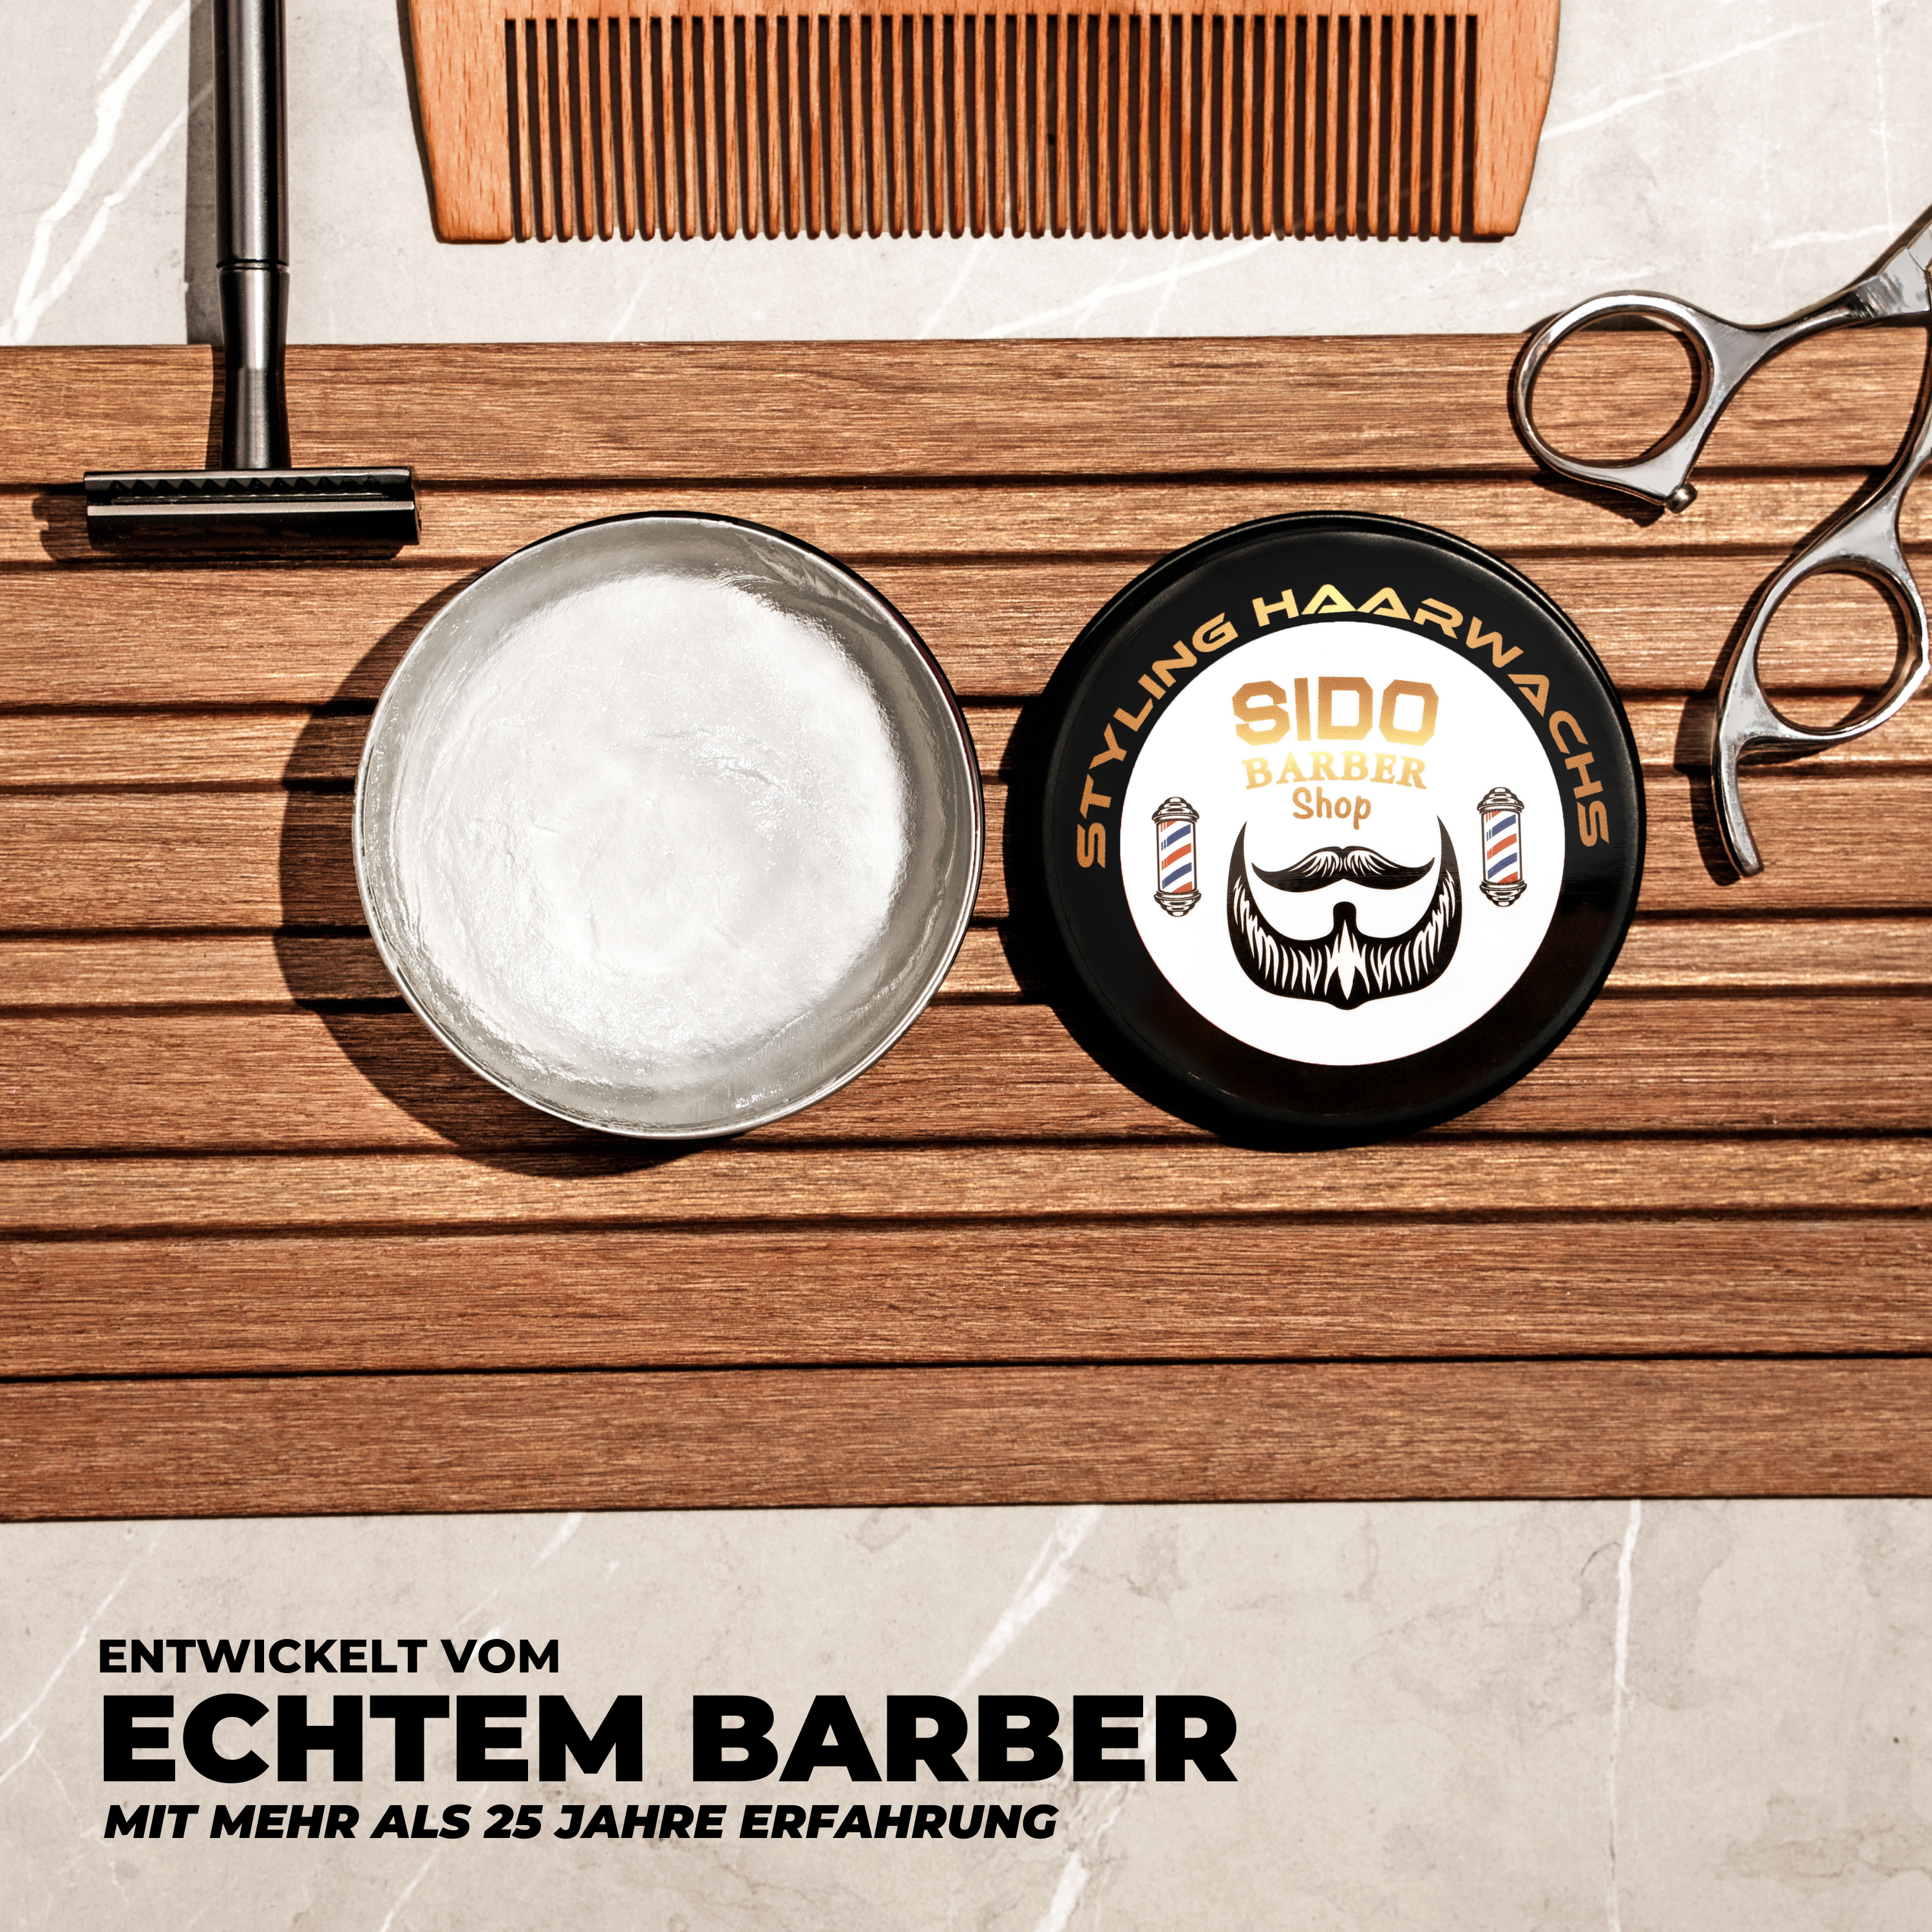 SIDO BARBER Shop Haarwachs Männer mit Farbe (Weiß) - Friseur Haar Wachs für starken Halt - Hair Wax für Herren ohne Schmieren, Kleben & Rückstände